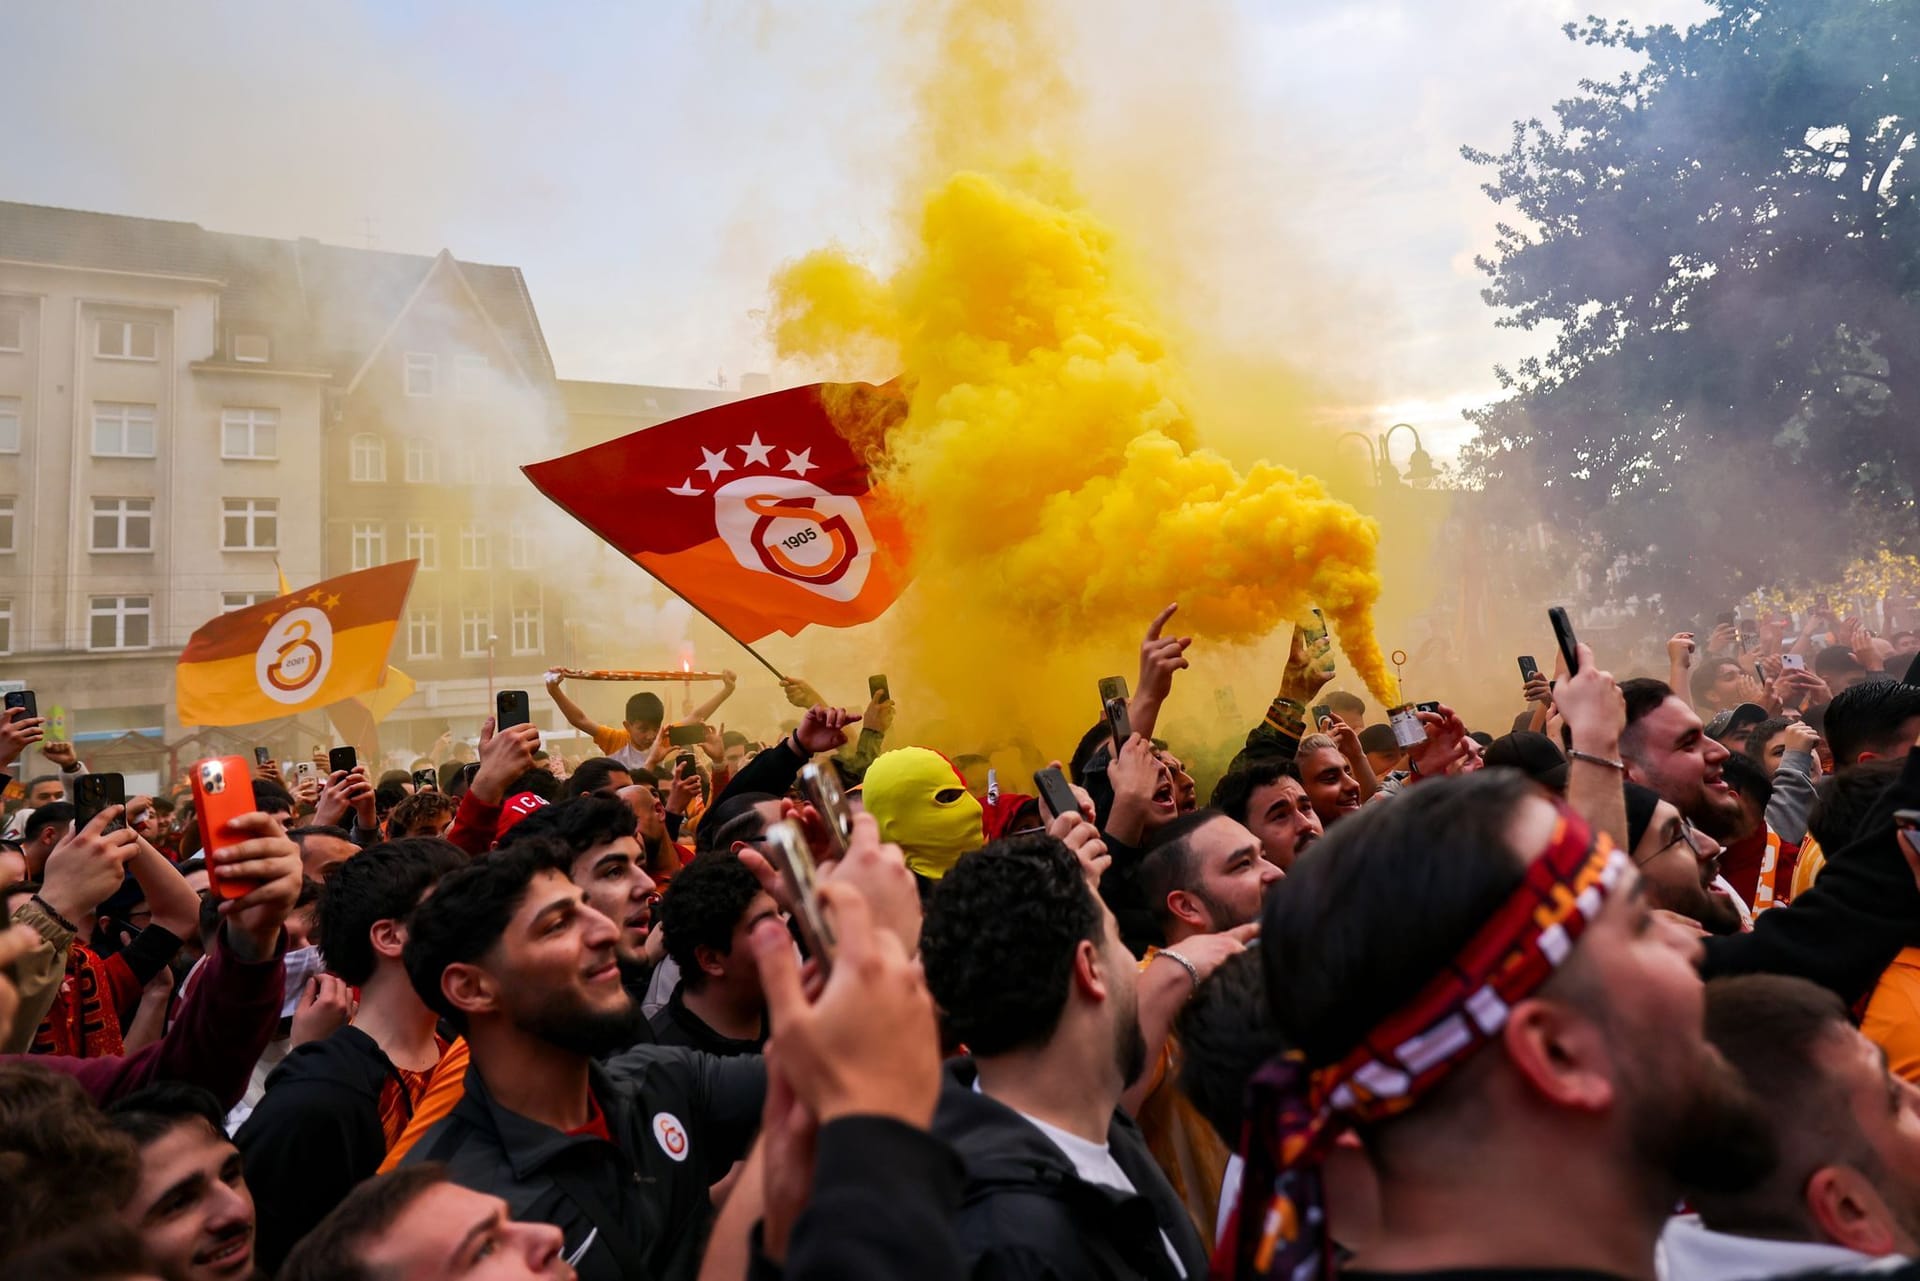 Laut der Nachrichtenagentur dpa sollen Tausende an der Feier in Duisburg teilgenommen haben.